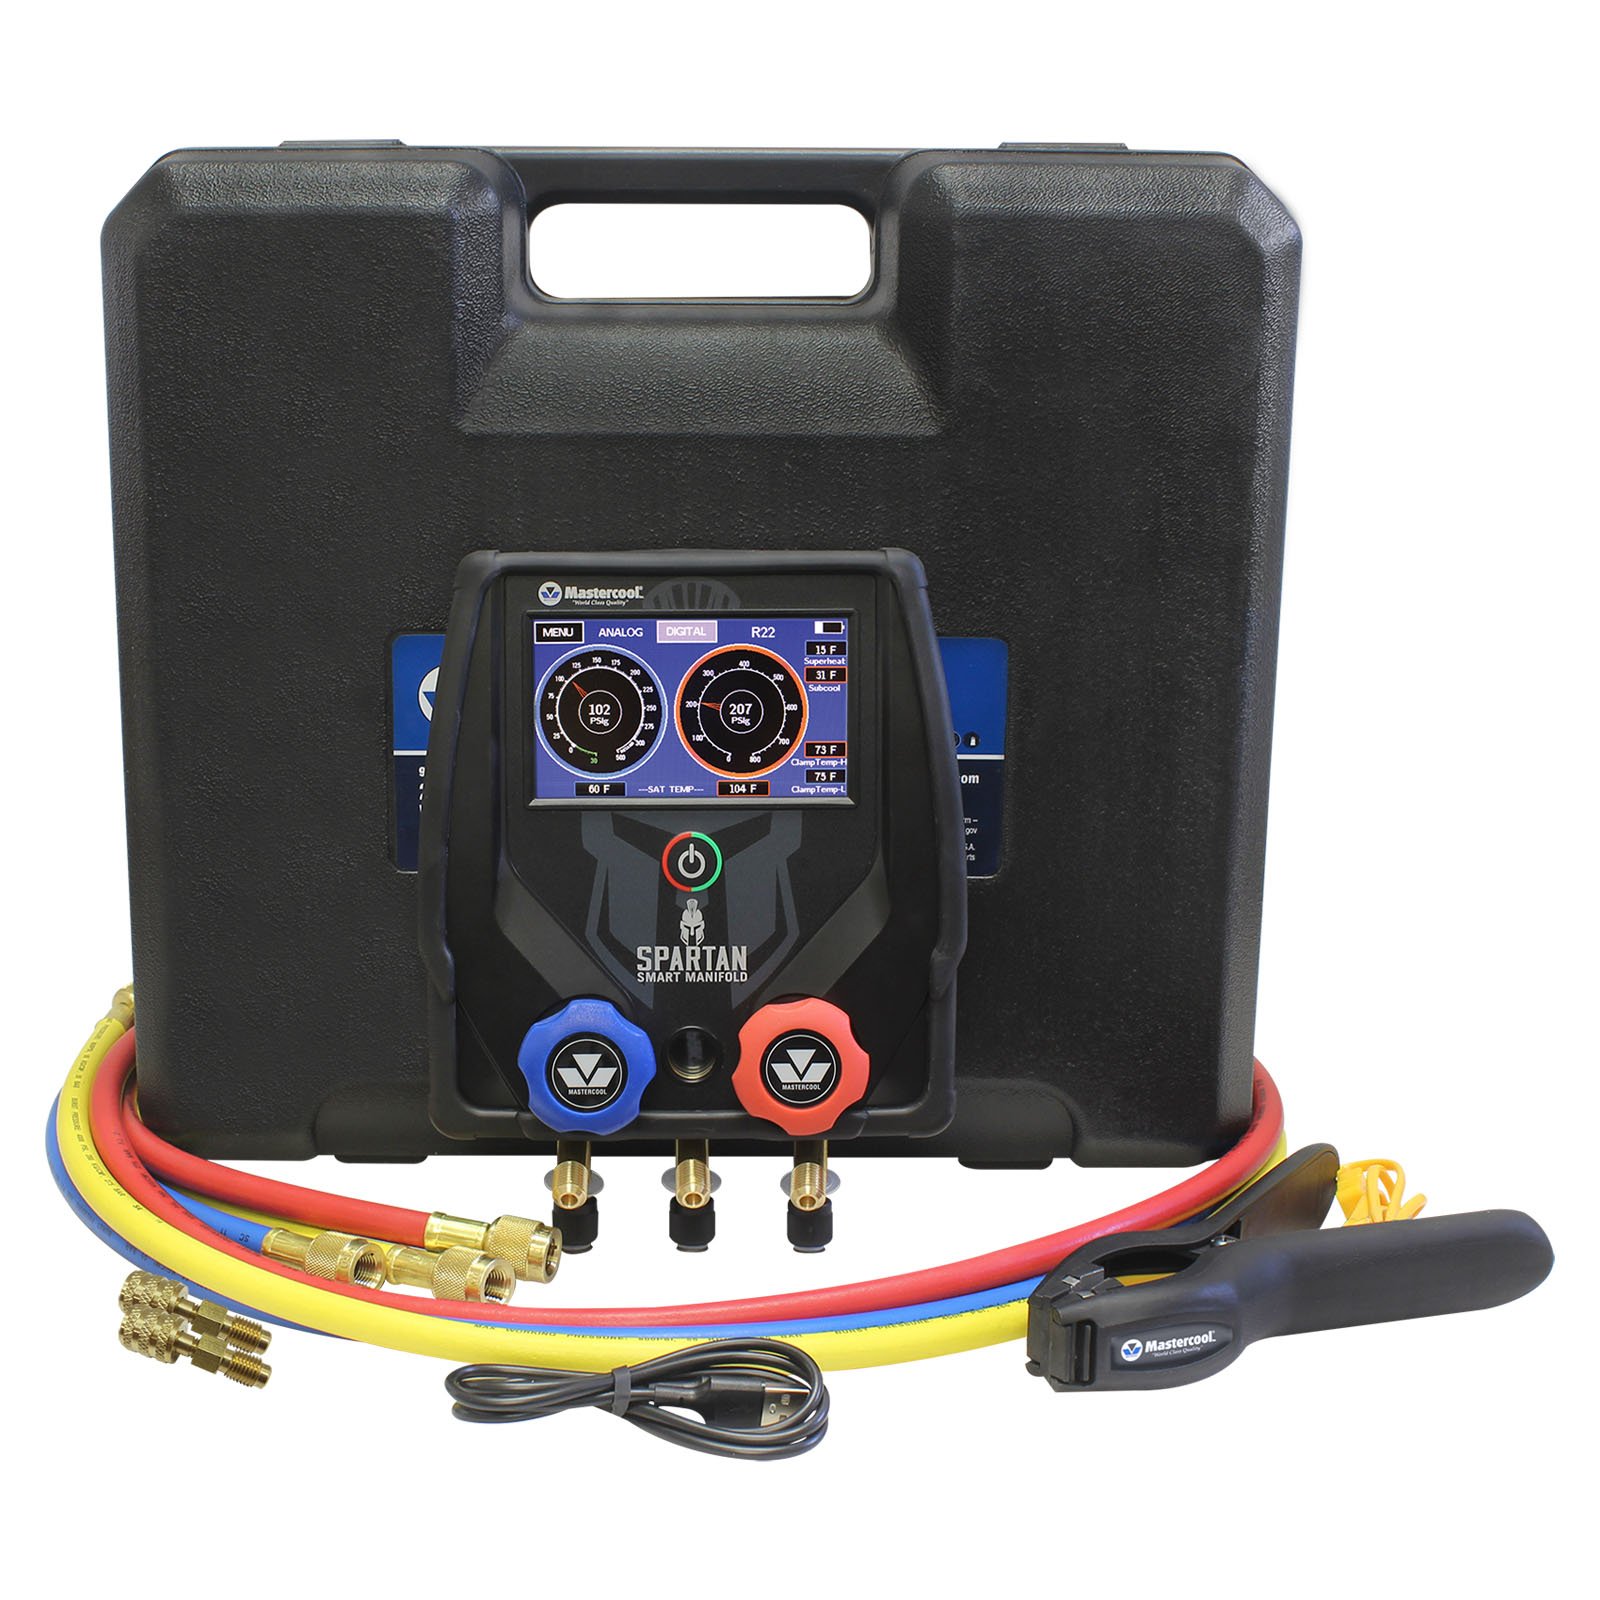 SPARTAN Manómetro Digital de 2 vías con mangueras de alta presión de 60”, conectores estándar y 1-pinza (temp)